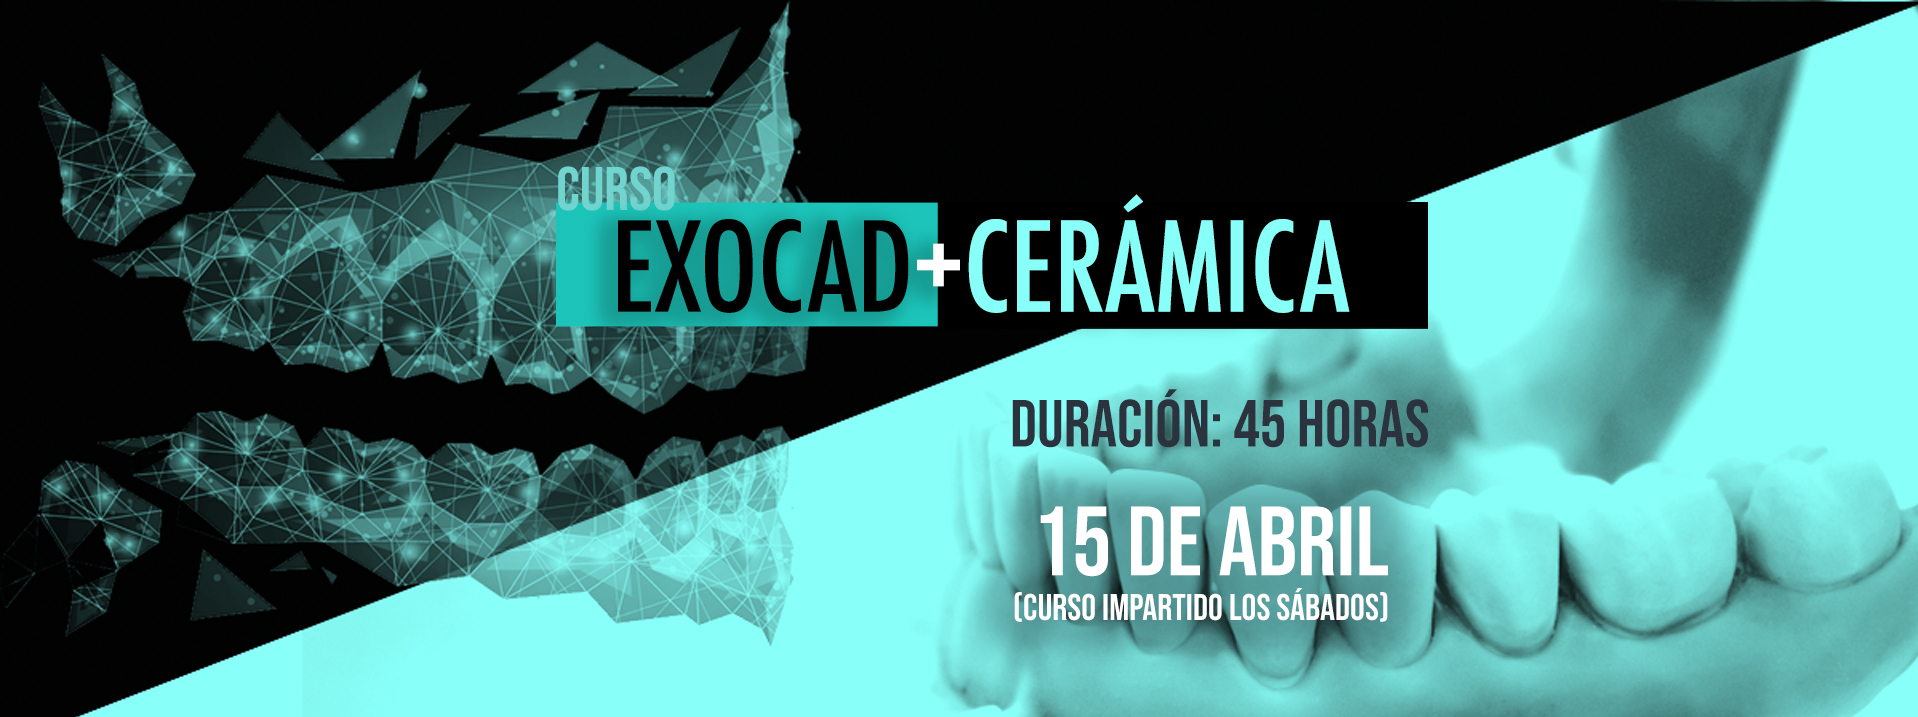 Curso EXOCAD+CERÁMICA - Ferrer Técnica Dental